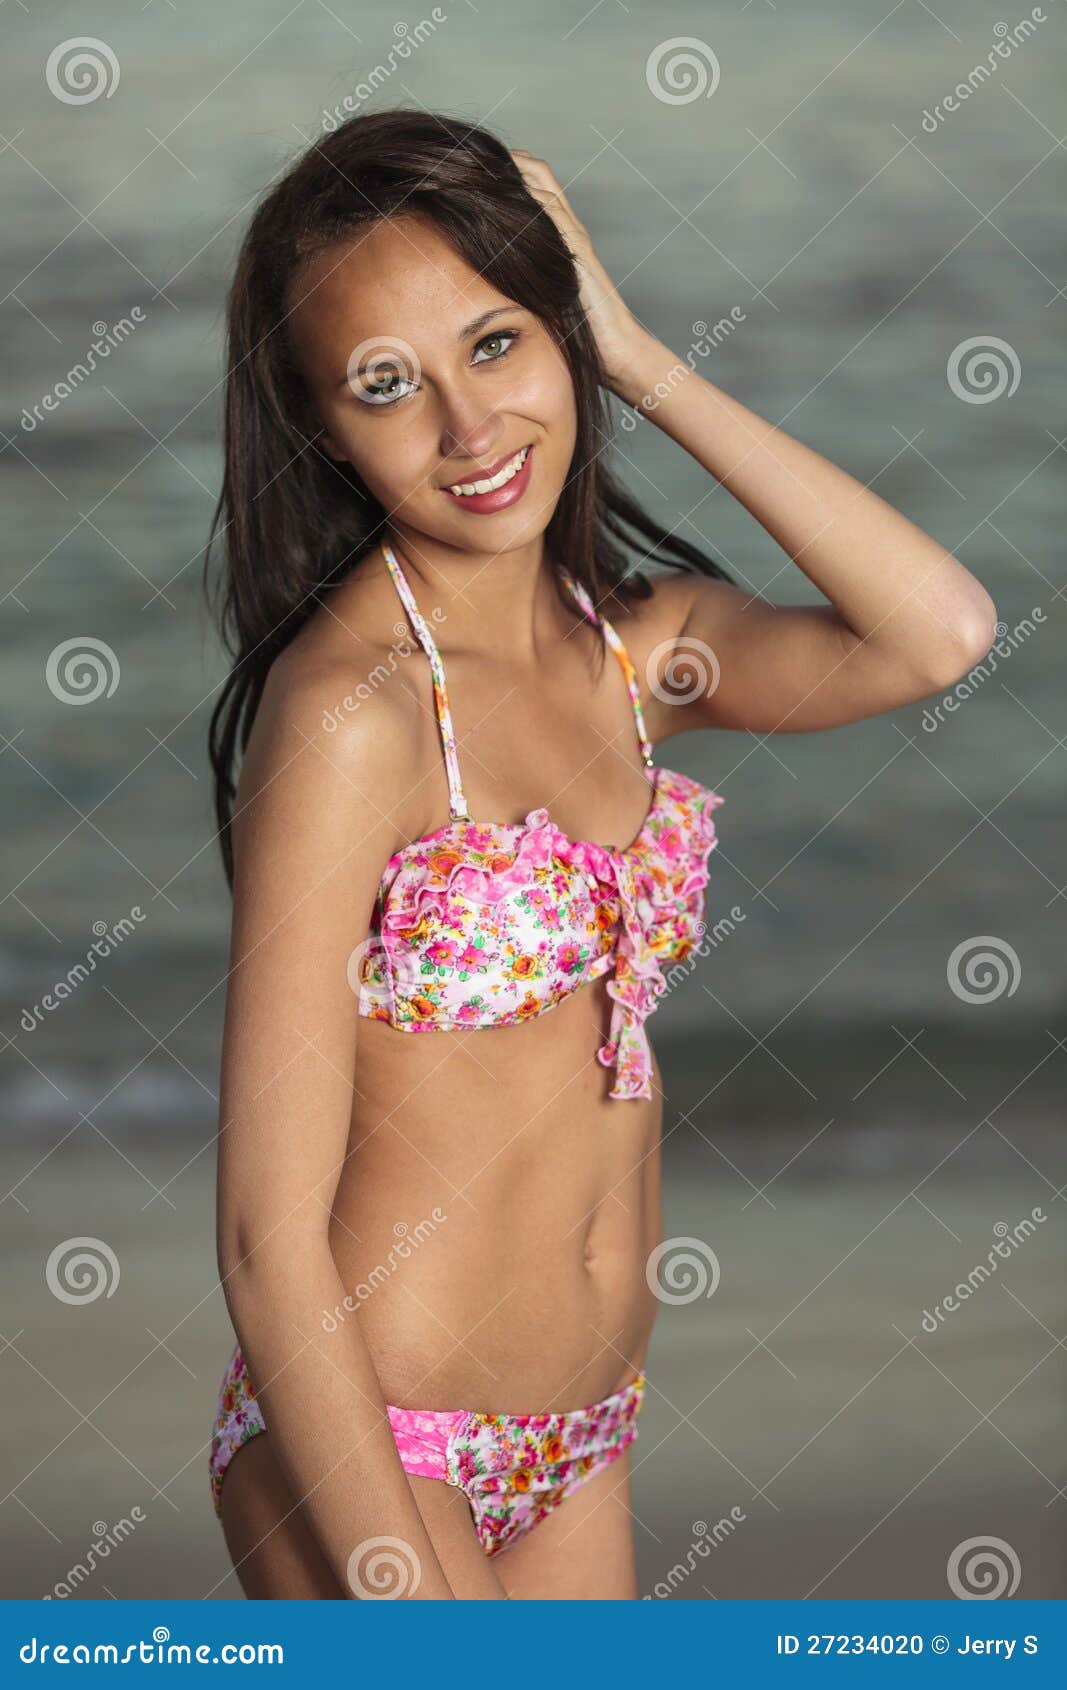 Cute brunette teen girls in bikinis